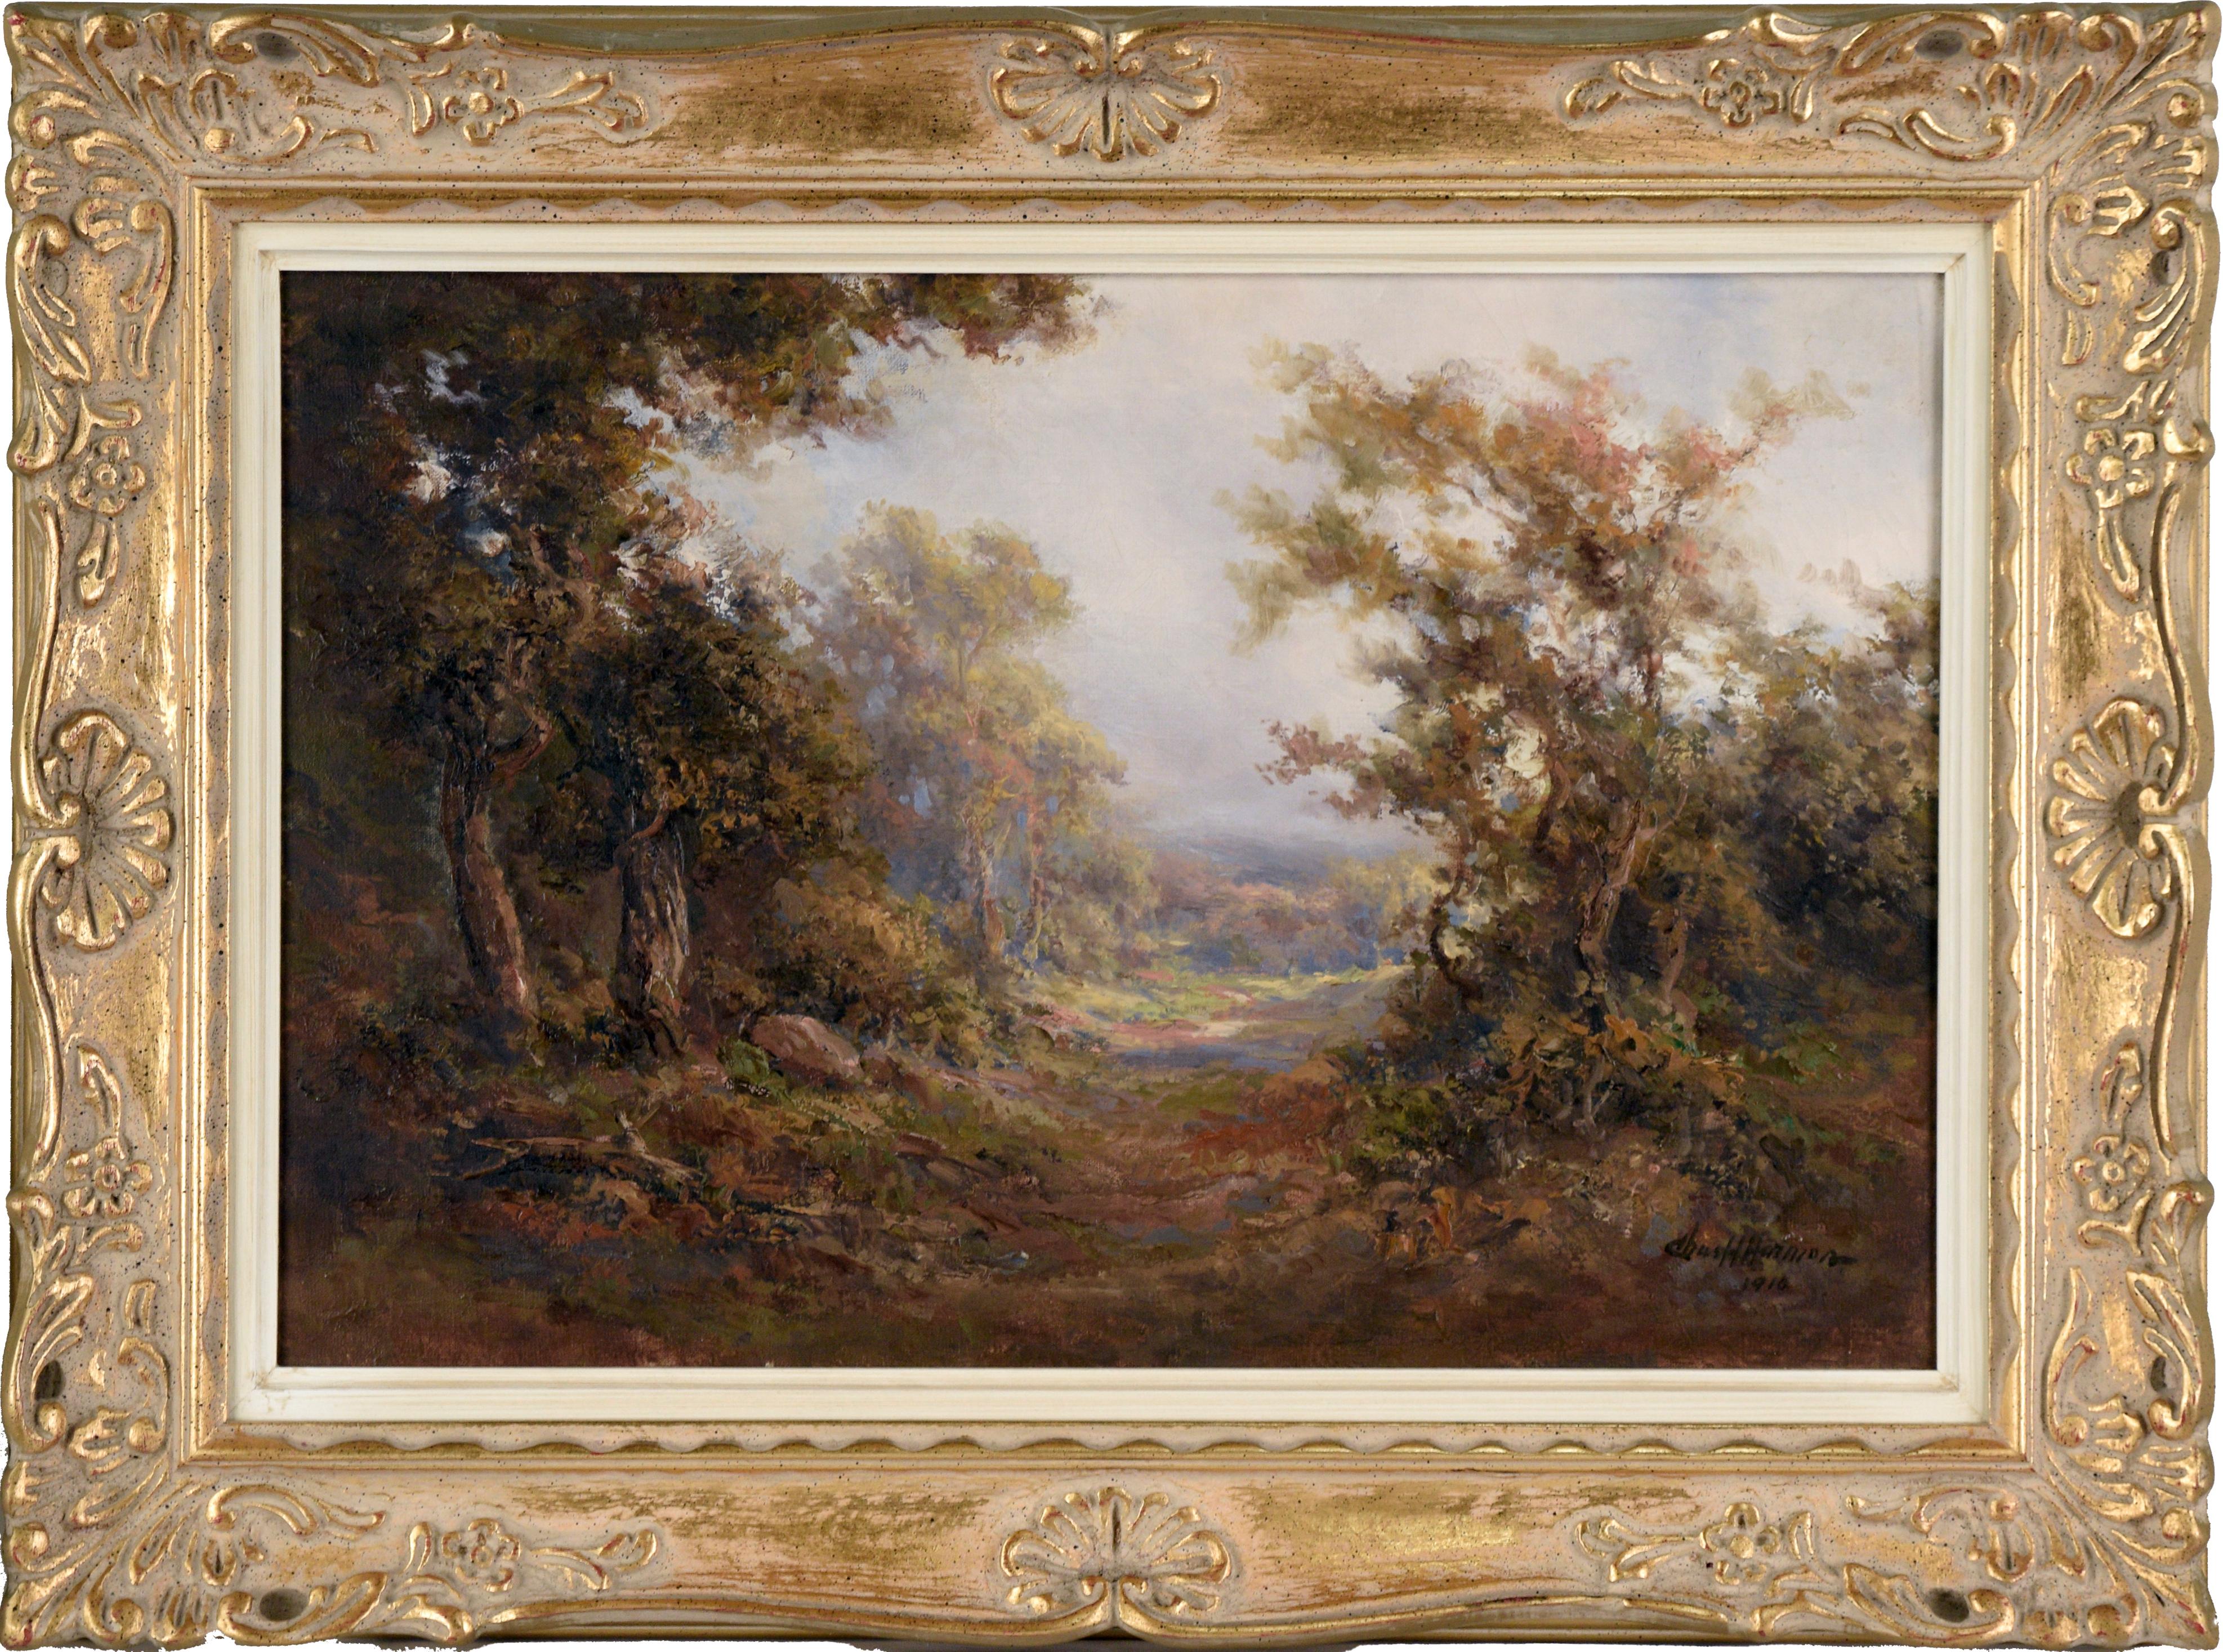 Landscape Painting Charles Harmon - Path Out of the Woods (Le chemin des bois) - Paysage naturaliste à l'huile sur toile